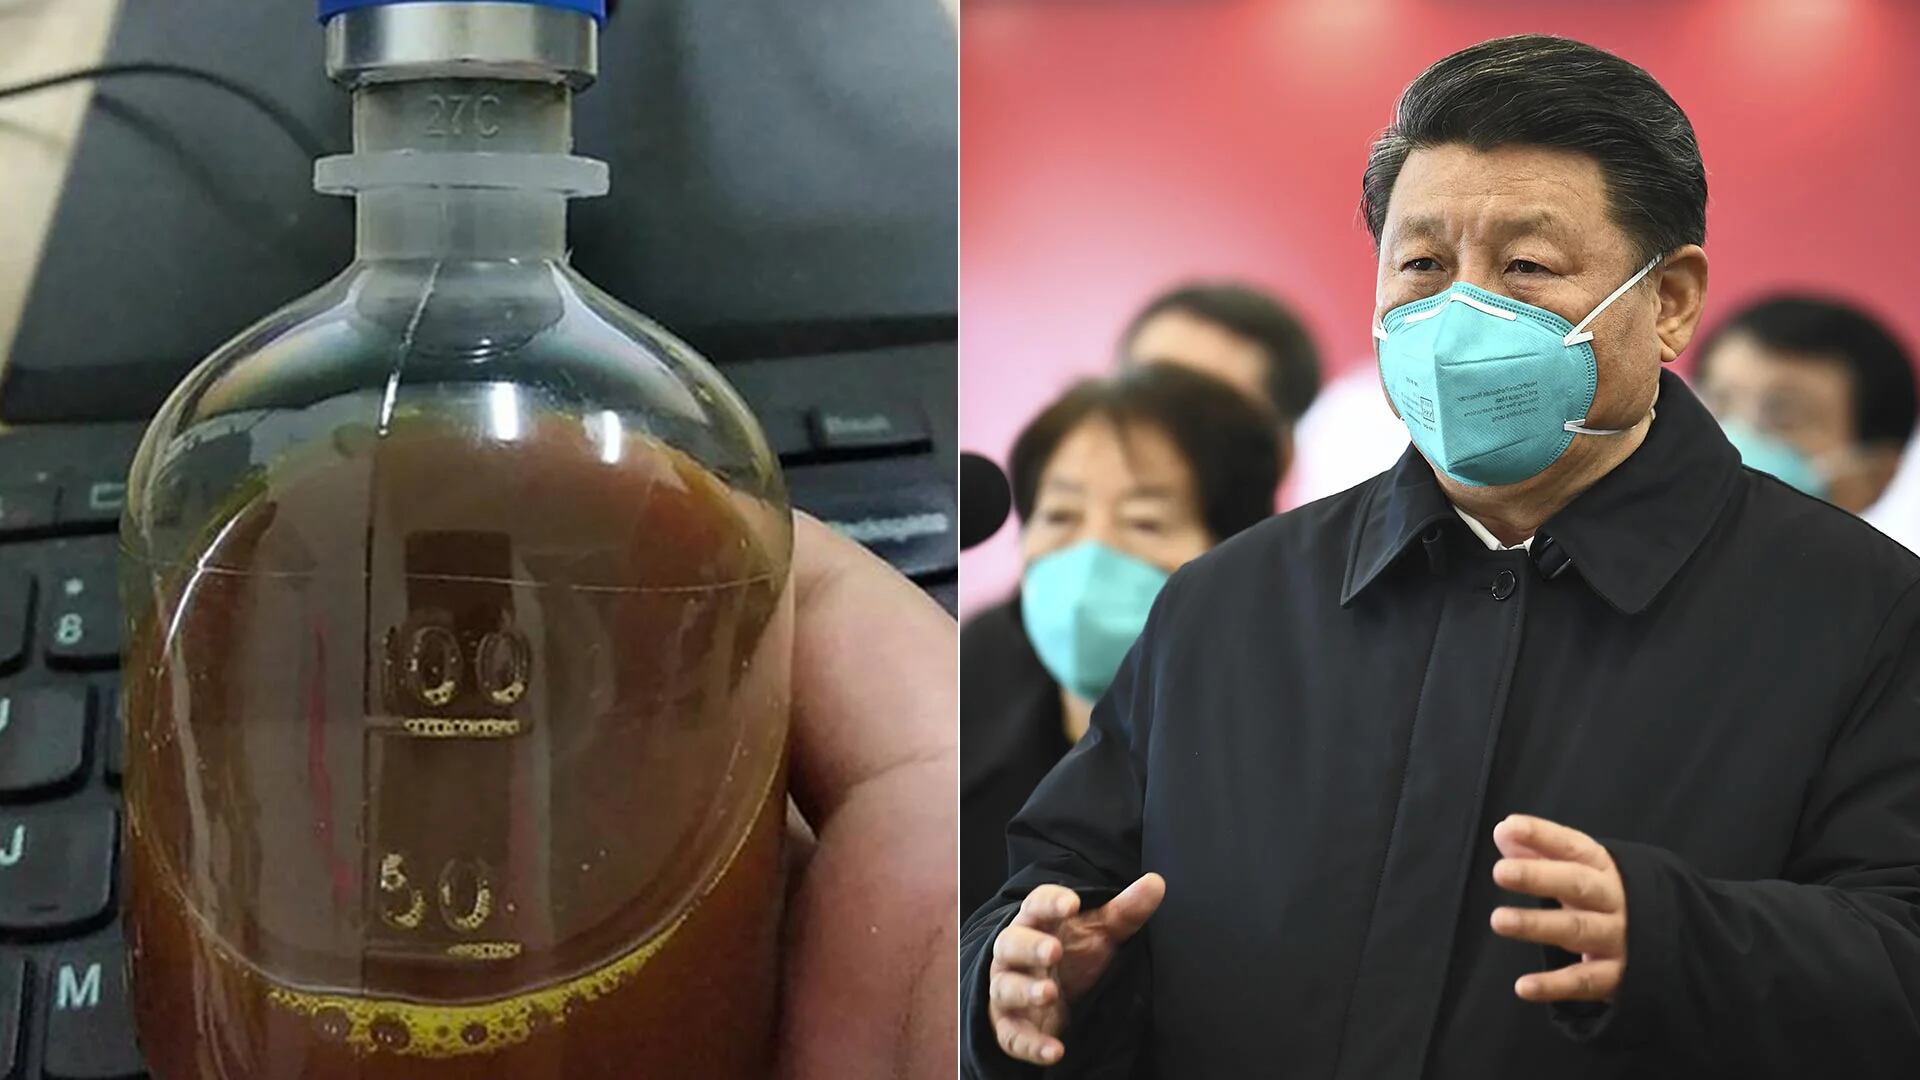 La orden de Xi Jinping fue clara: nadie puede criticar la medicina tradicional china que combate, según él, el coronavirus (AP)